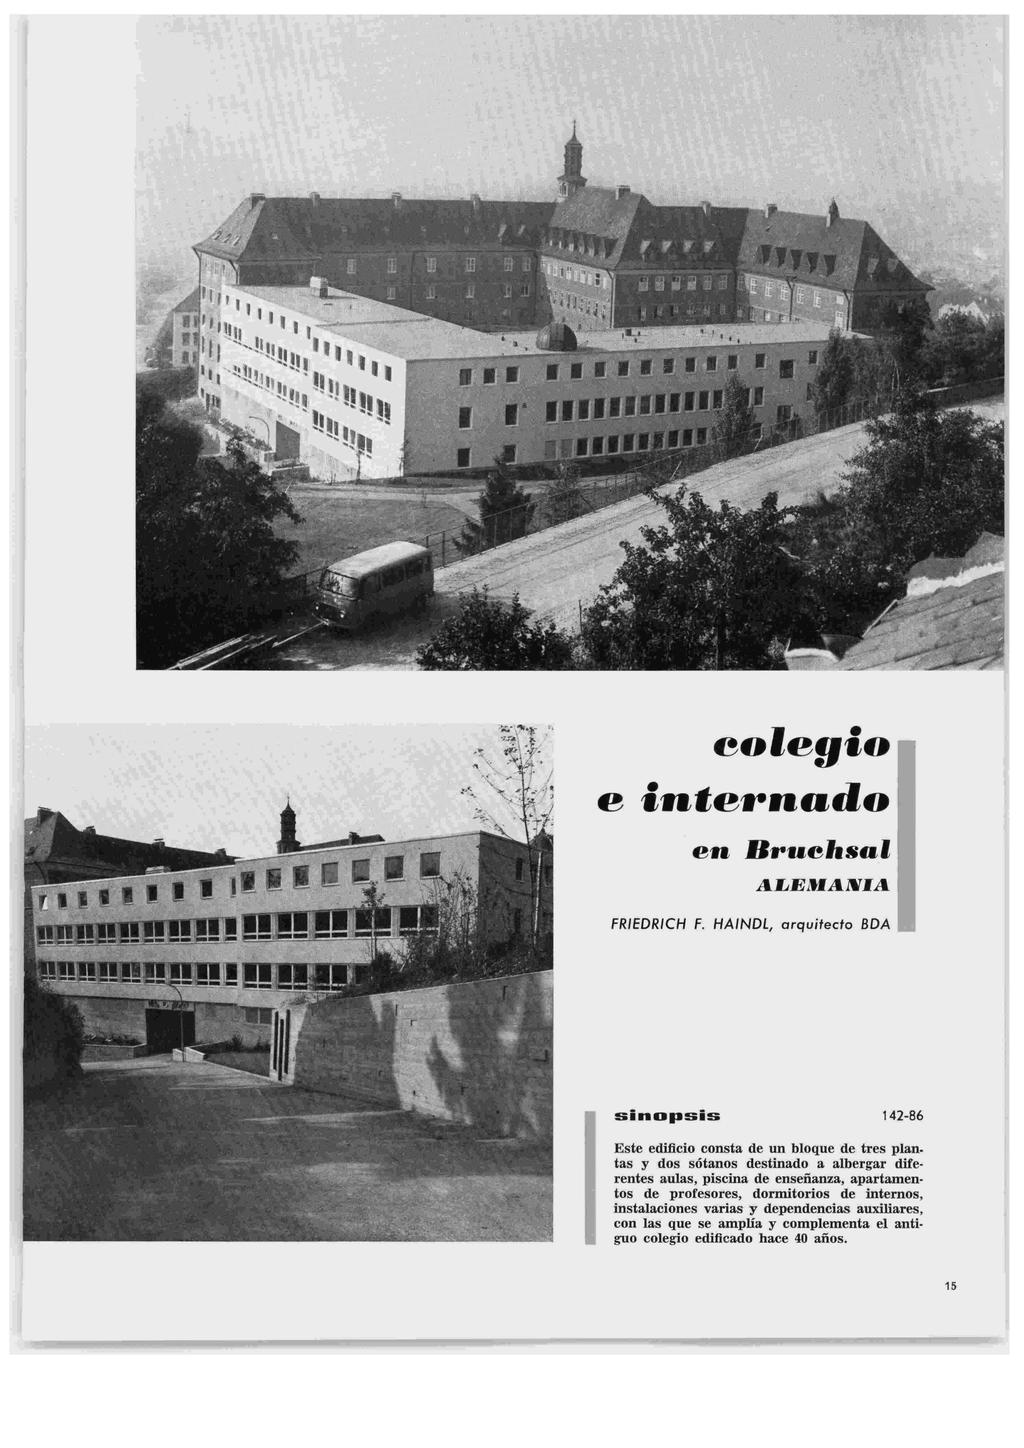 Informes de la Construcción Vol. 23, nº 223 Agosto, septiembre de 1970 en Bruehsal FRIEDRICH F.